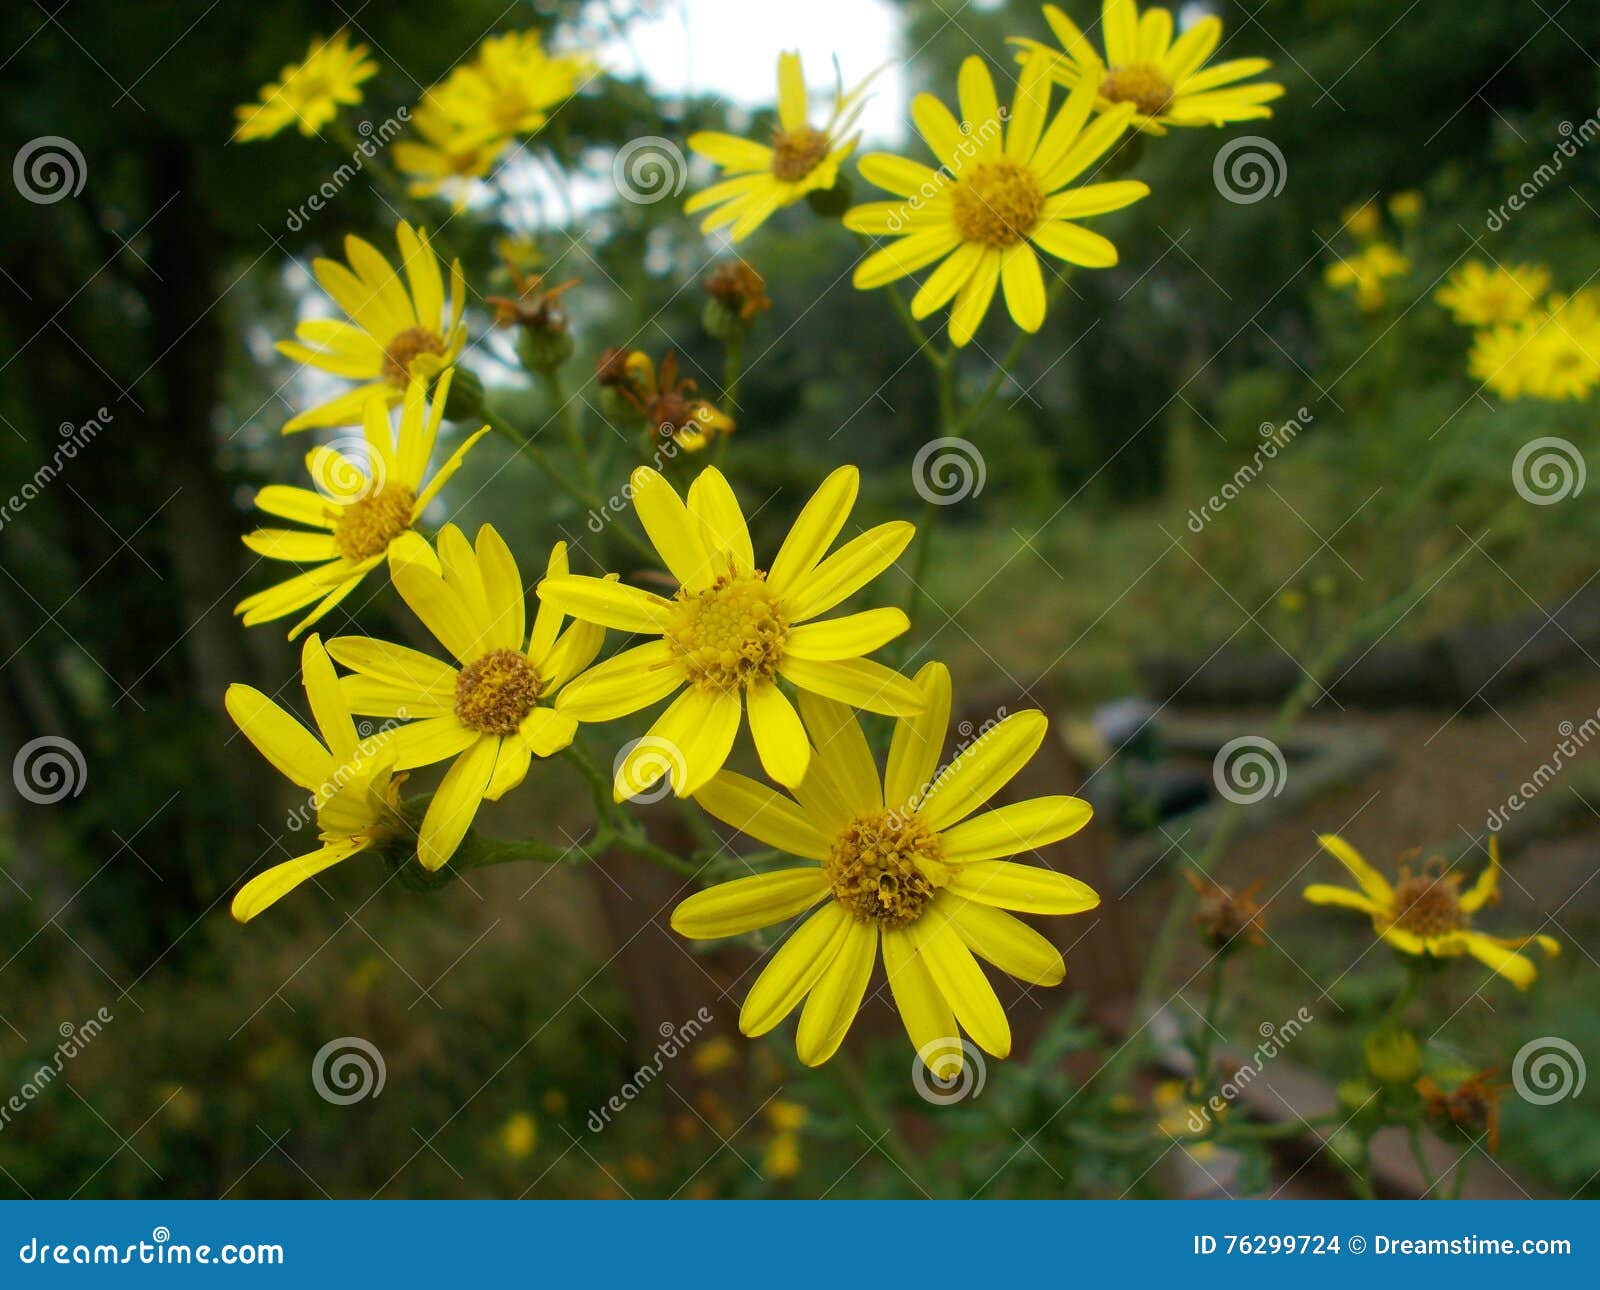 euryops pectinatus, yellow bush daisy